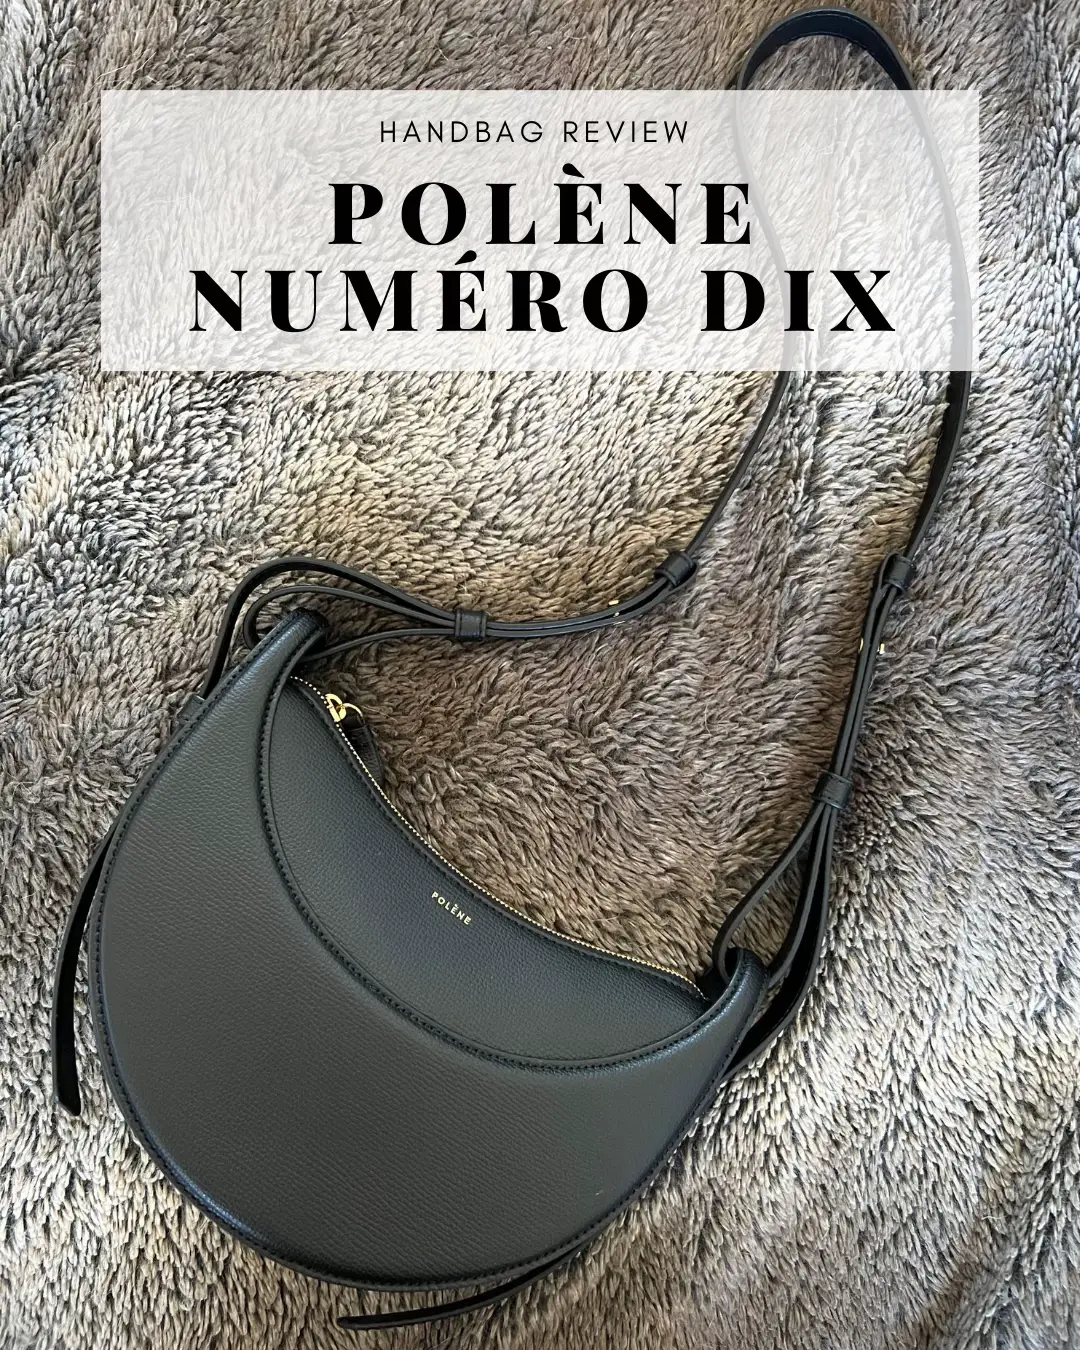 Polene Numero Dix Review - since wen